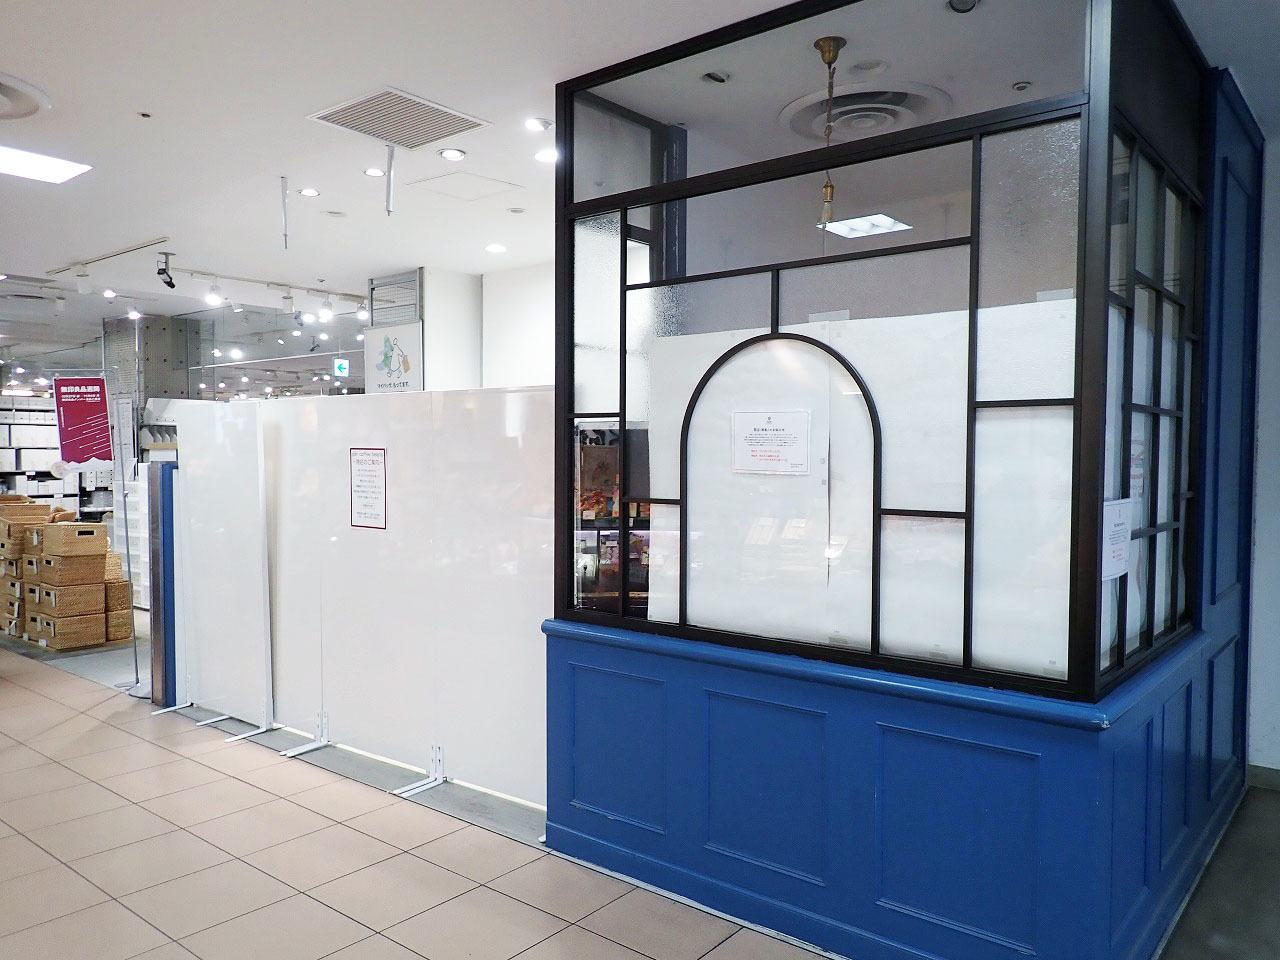 「glin coffee 本川越PePe店」は本川越駅に直結している「西武本川越ペペ」内で営業していました。2店舗あるうちの改札から遠いほうです